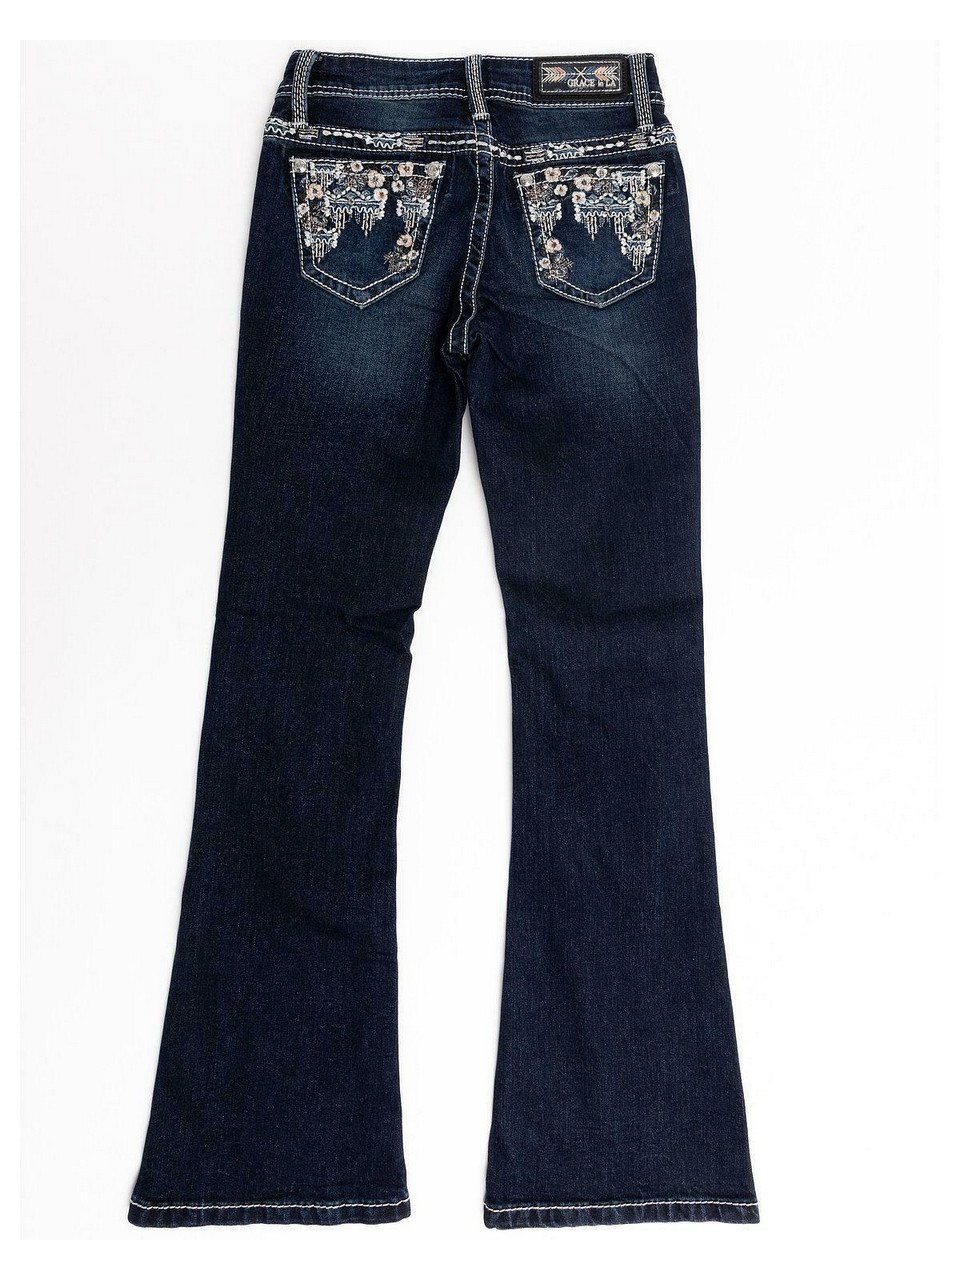 grace in la floral jeans